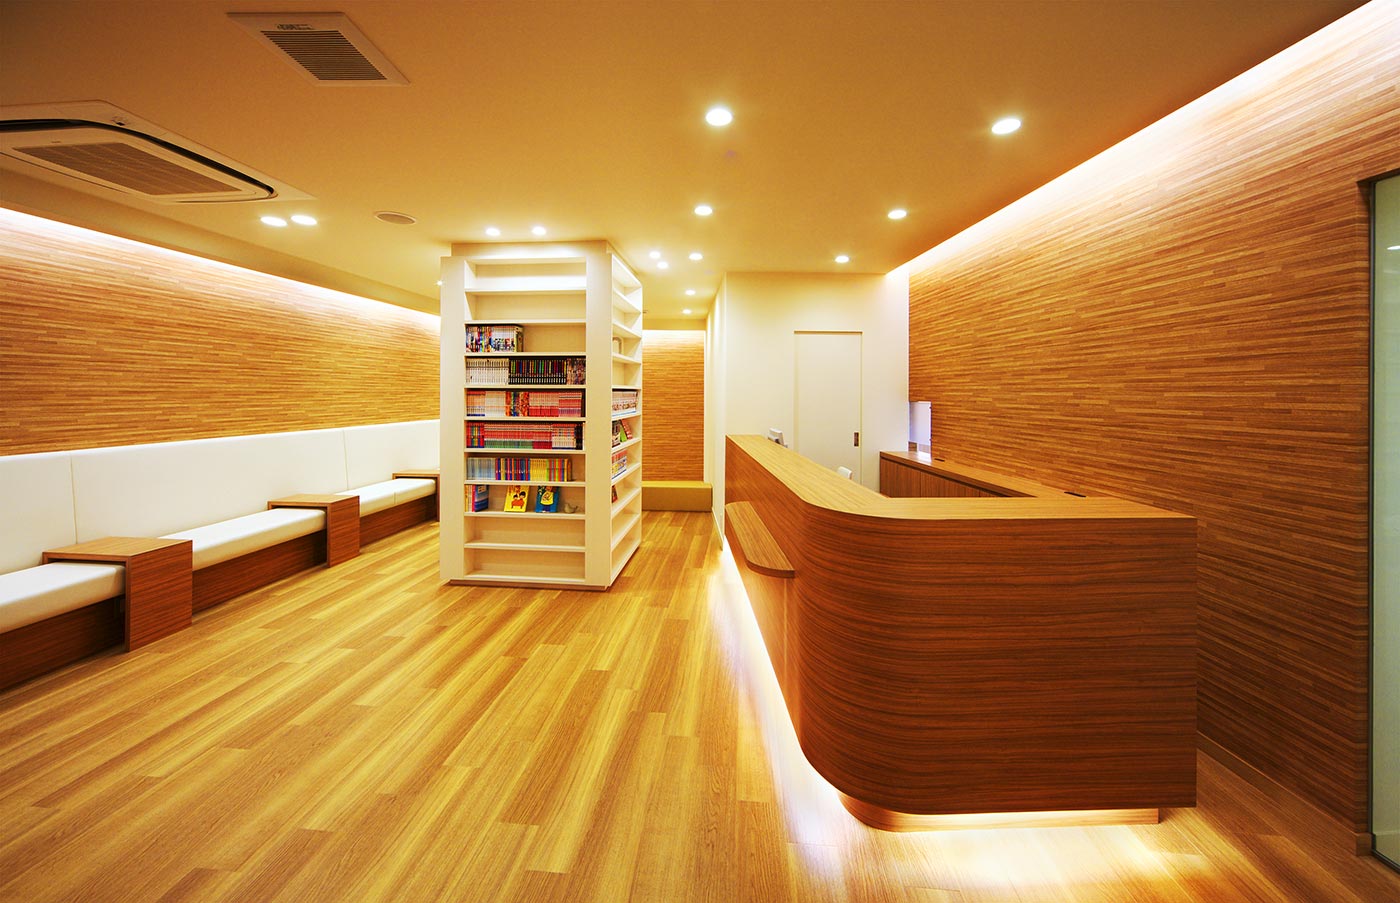 兵庫県池田市でリニューアルされた「アゼリアデンタルクリニック」の間接照明で包まれた待合室|PARKDESIGN（パークデザイン）のクリニックデザイン事例